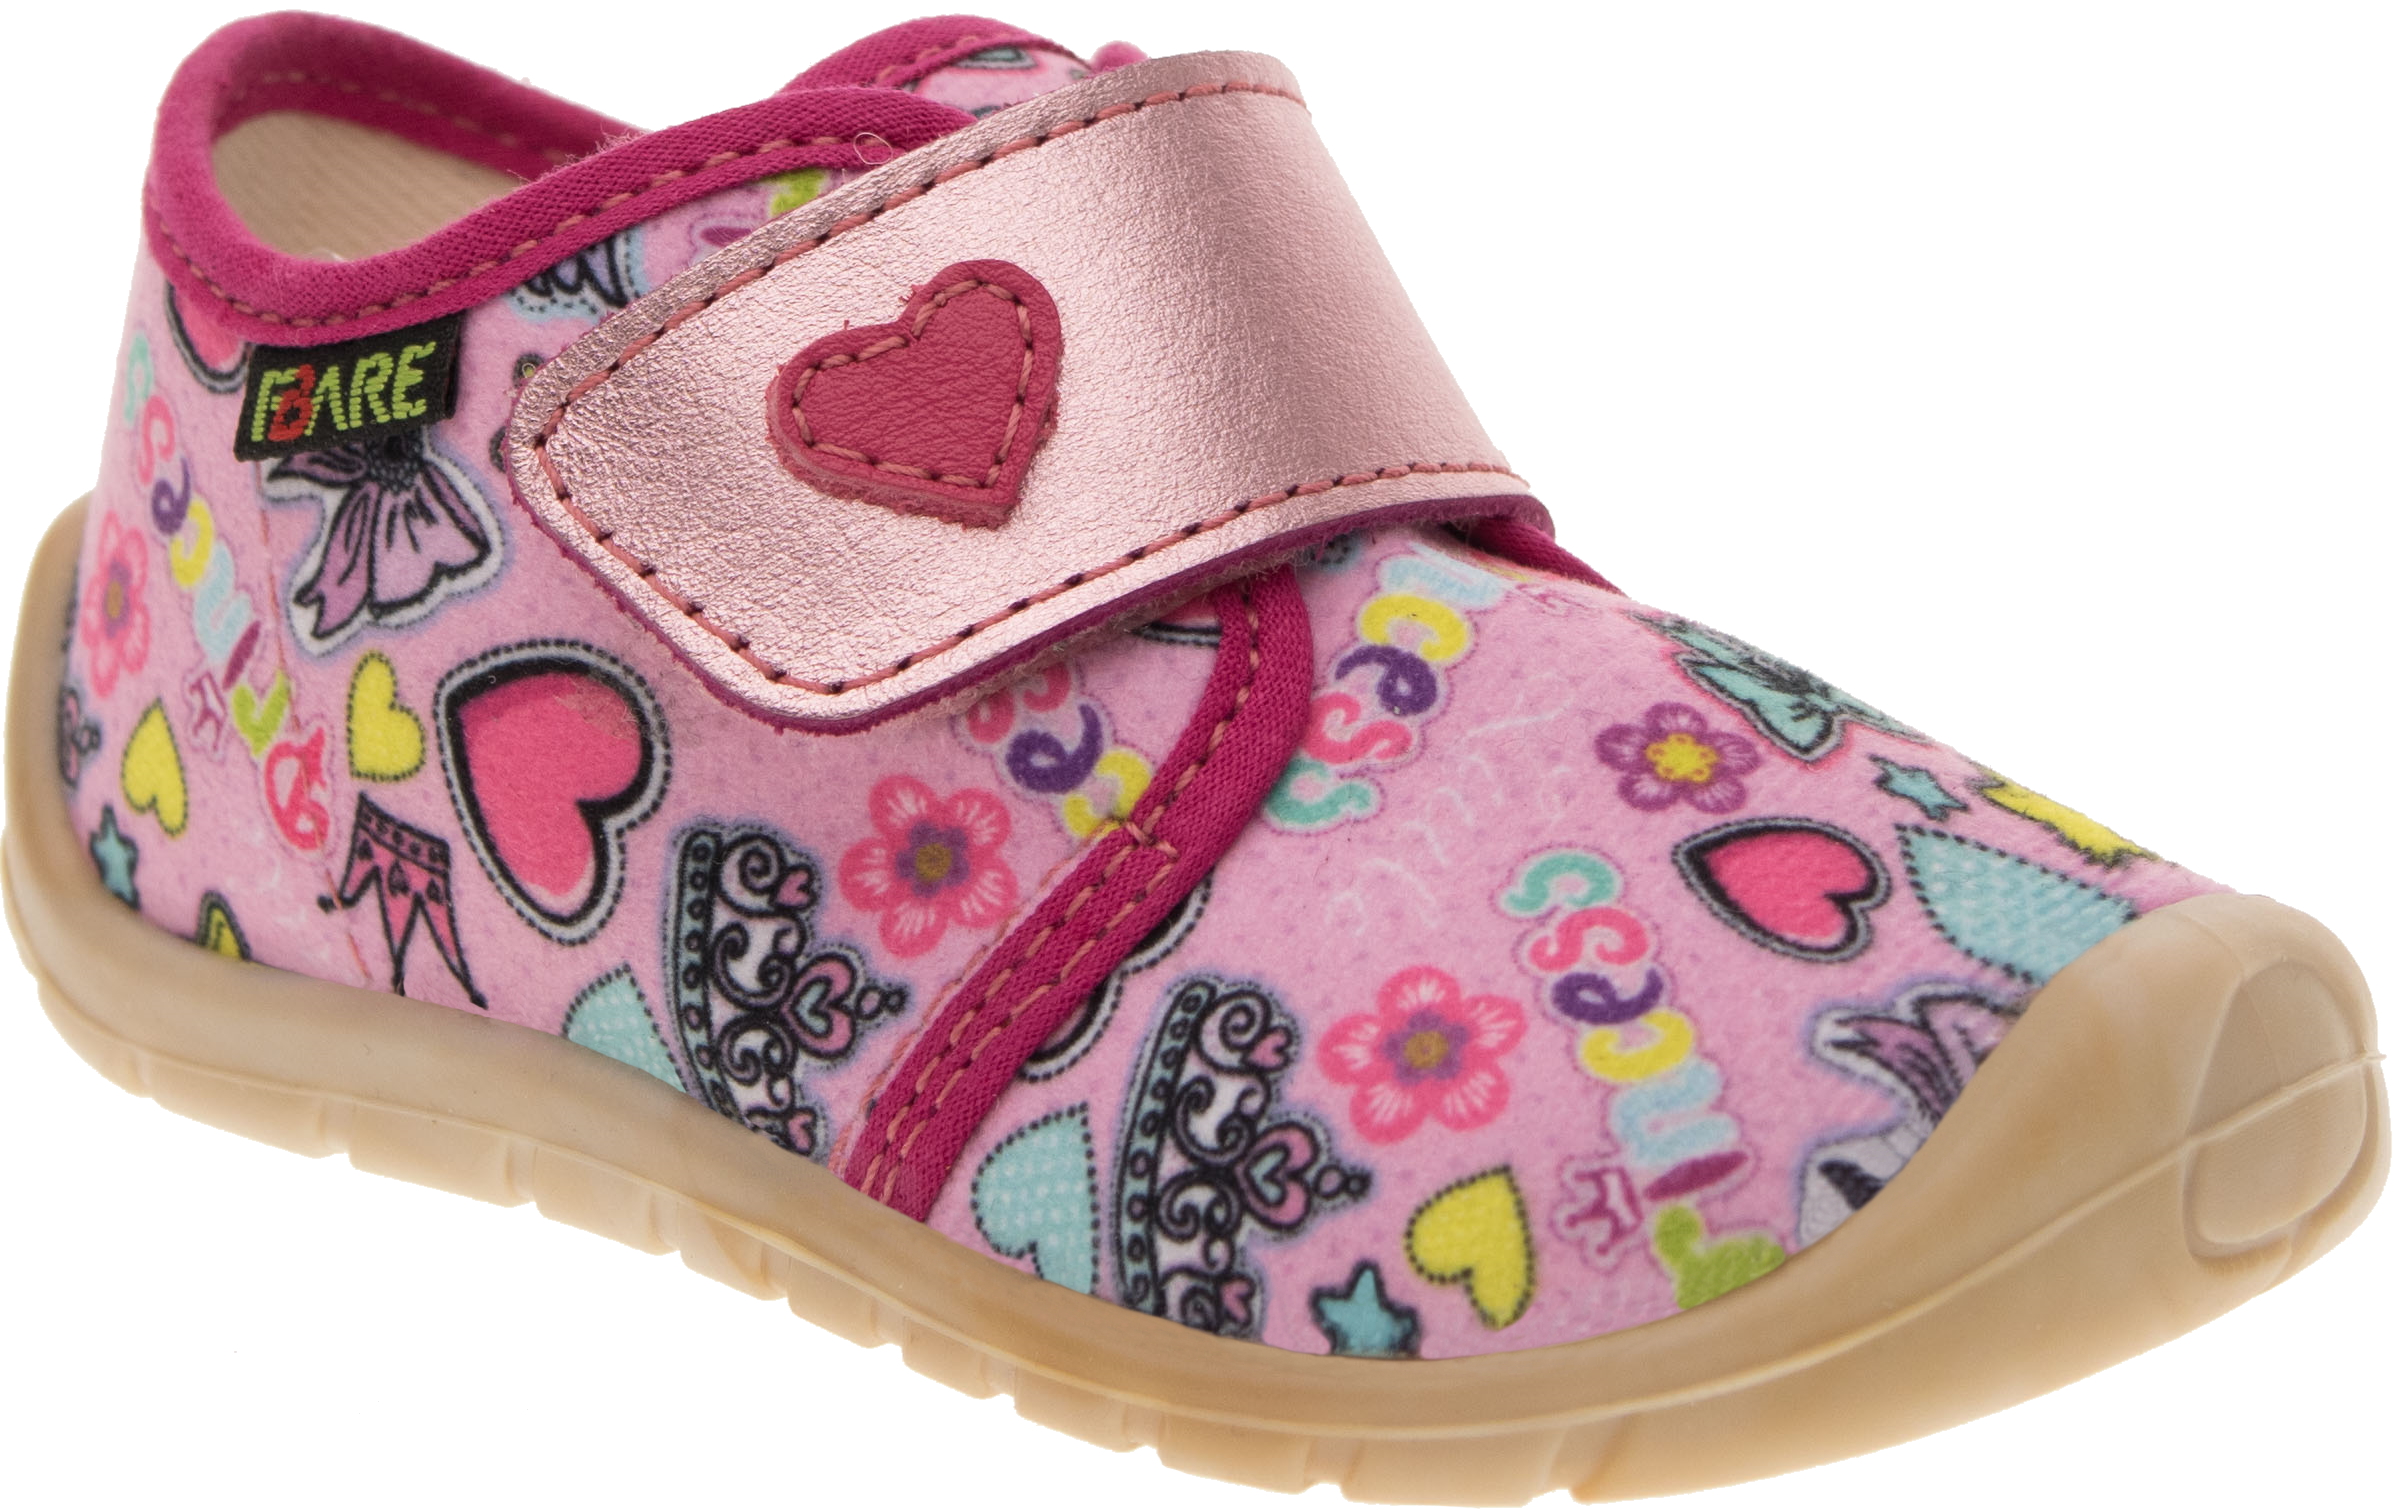 Fare Bare tekstiilist jalanõud Printsess Laste barefoot jalatsid - HellyK - Kvaliteetsed lasteriided, villariided, barefoot jalatsid